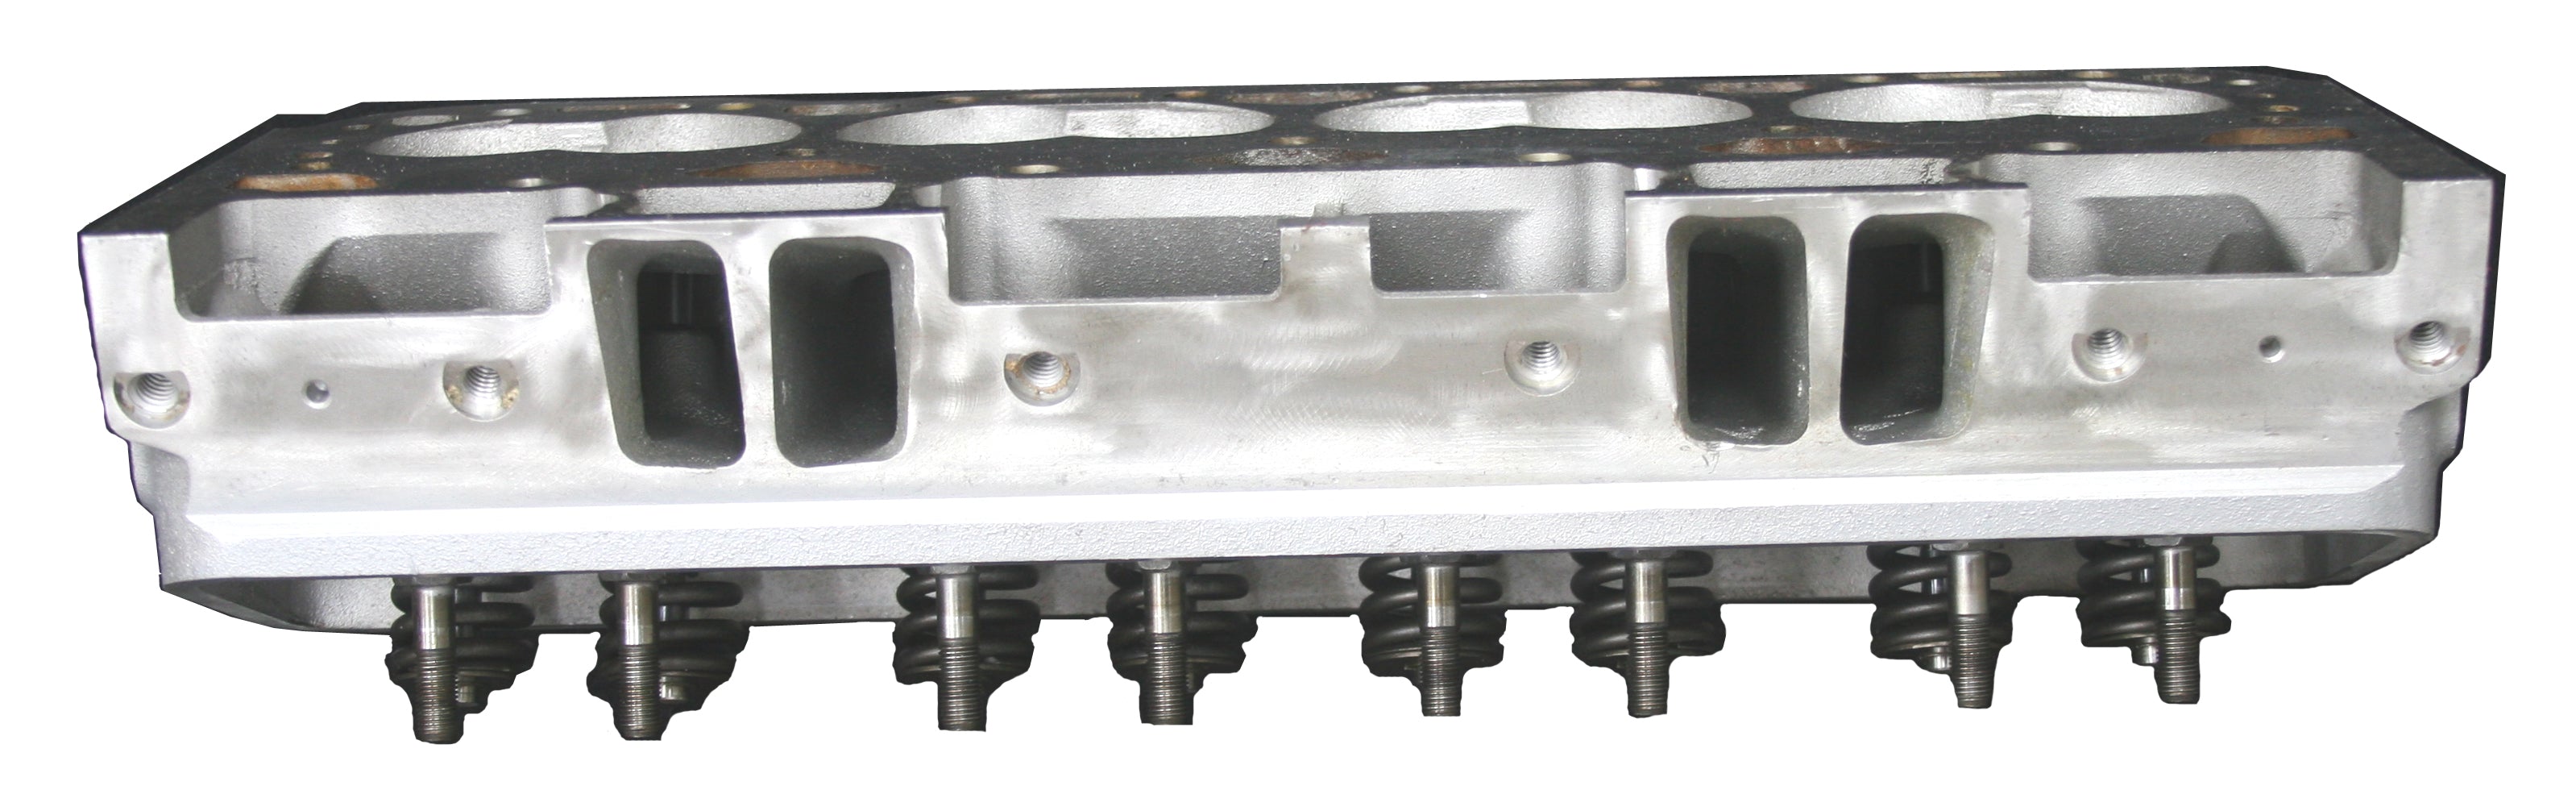 1999-2007 Chevy & Hummer H2 6.0L V8 rebuild Cylinder Head casting # 317